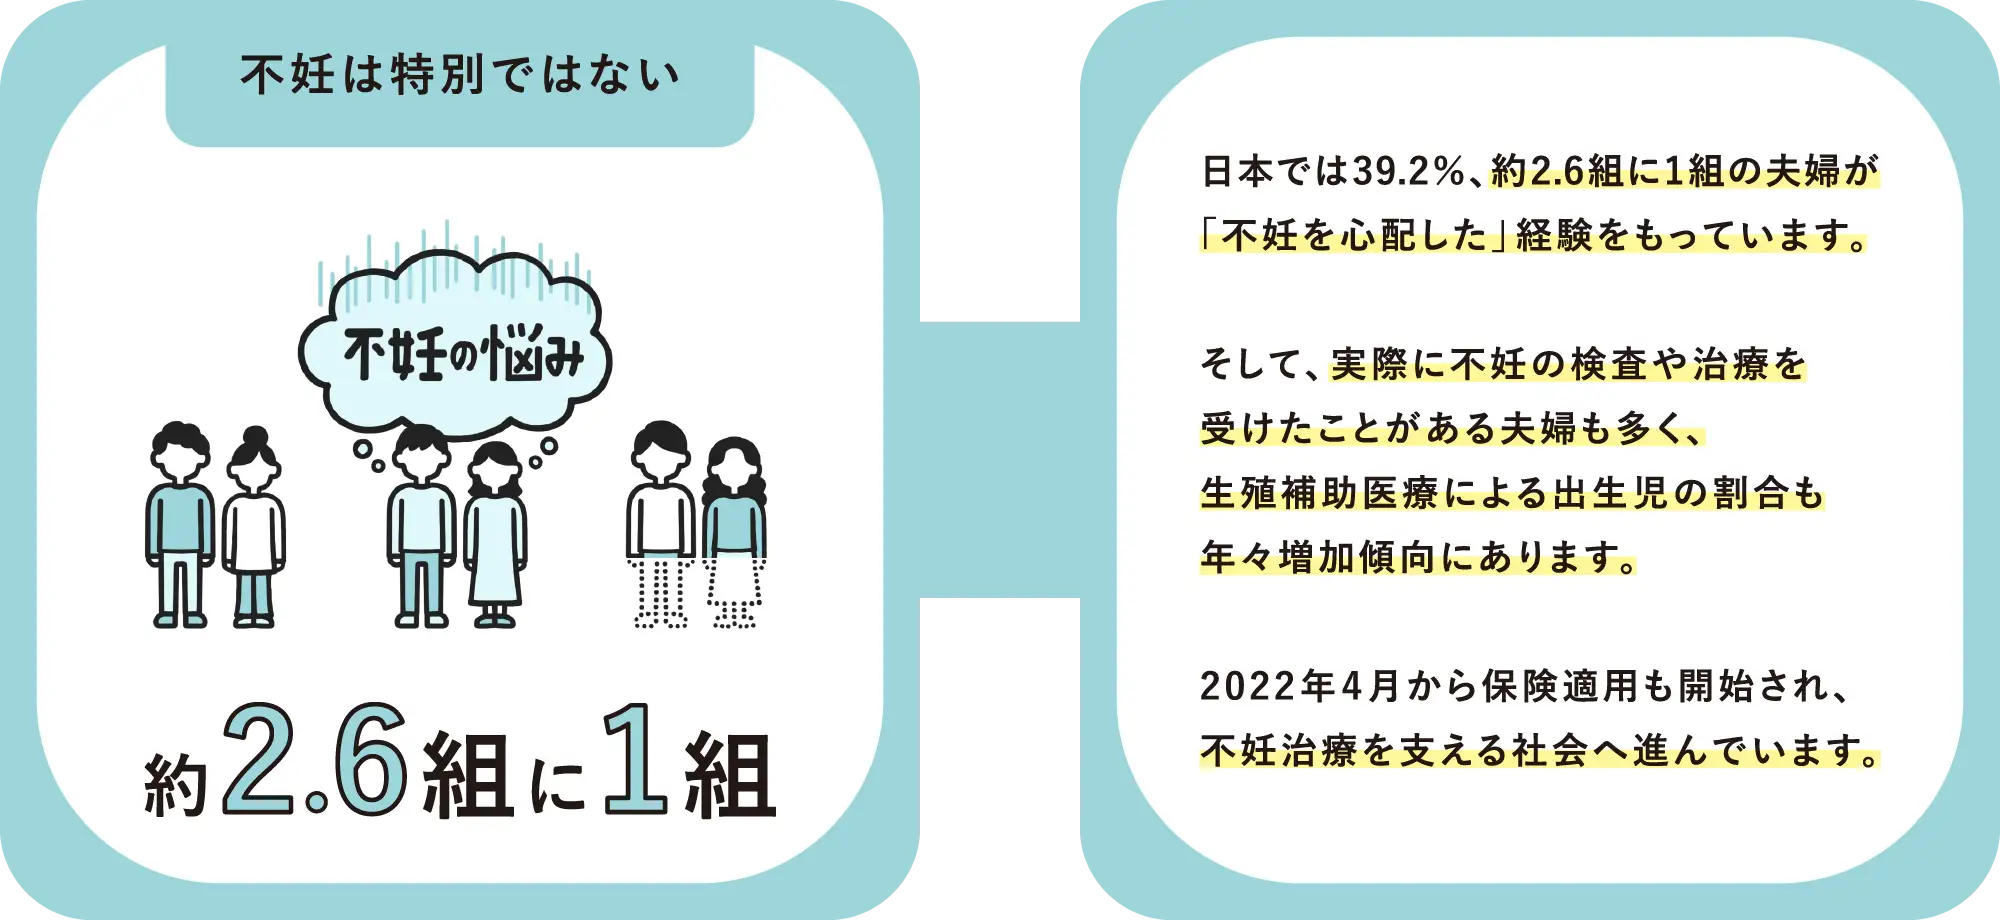 【不妊は特別ではない】日本では39.2％、約2.6組に1組の夫婦が「不妊を心配した」経験をもっています。そして、実際に不妊の検査や治療を受けたことがある夫婦も多く、生殖補助医療による出生児の割合も年々増加傾向にあります。2022年4月から保険適用も開始され、不妊治療を支える社会へ進んでいます。